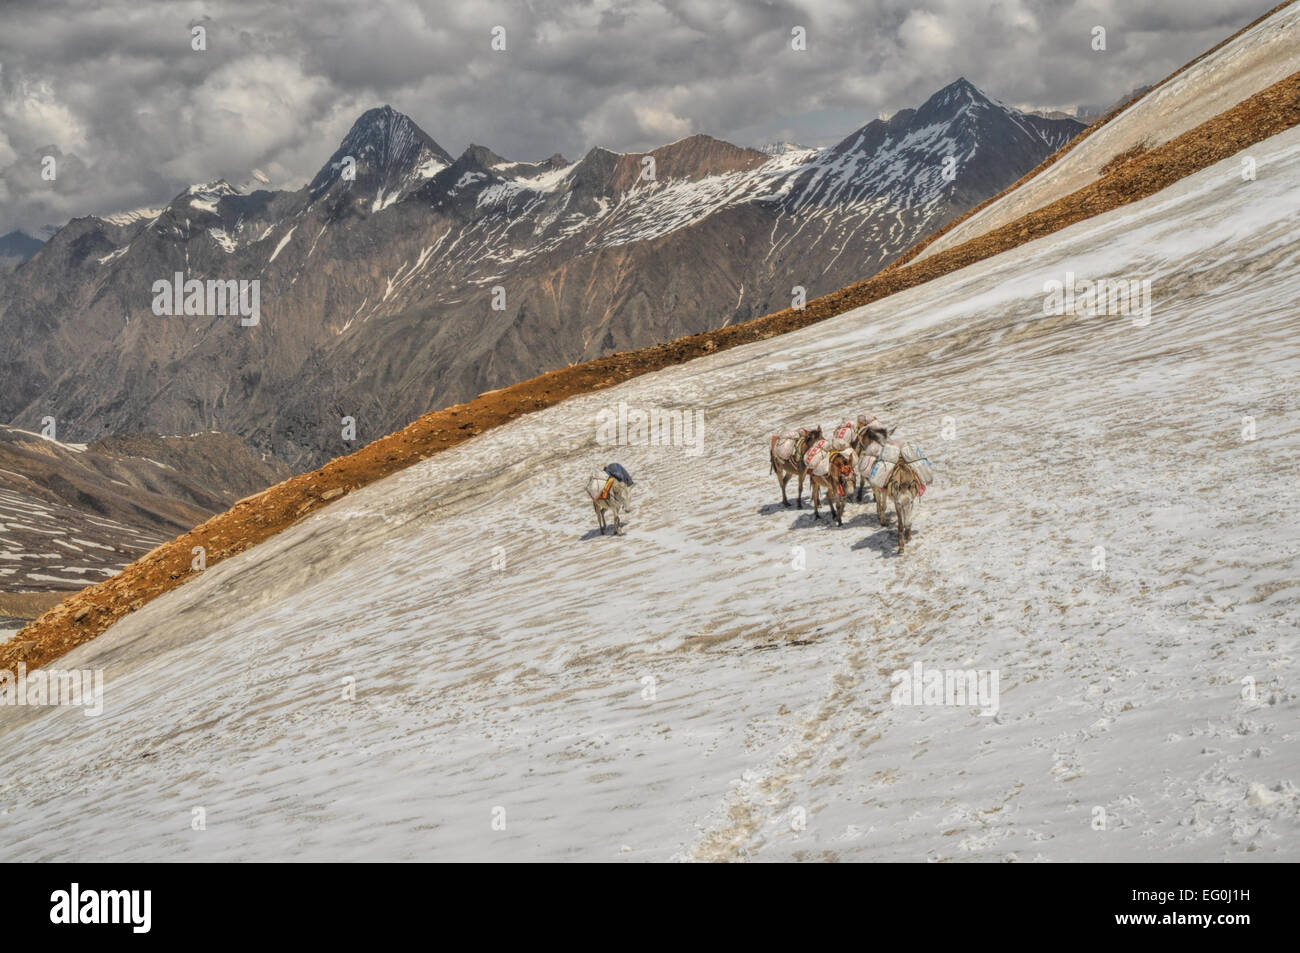 Caravane de mulets dans les hautes altitudes des montagnes de l'Himalaya au Népal Banque D'Images